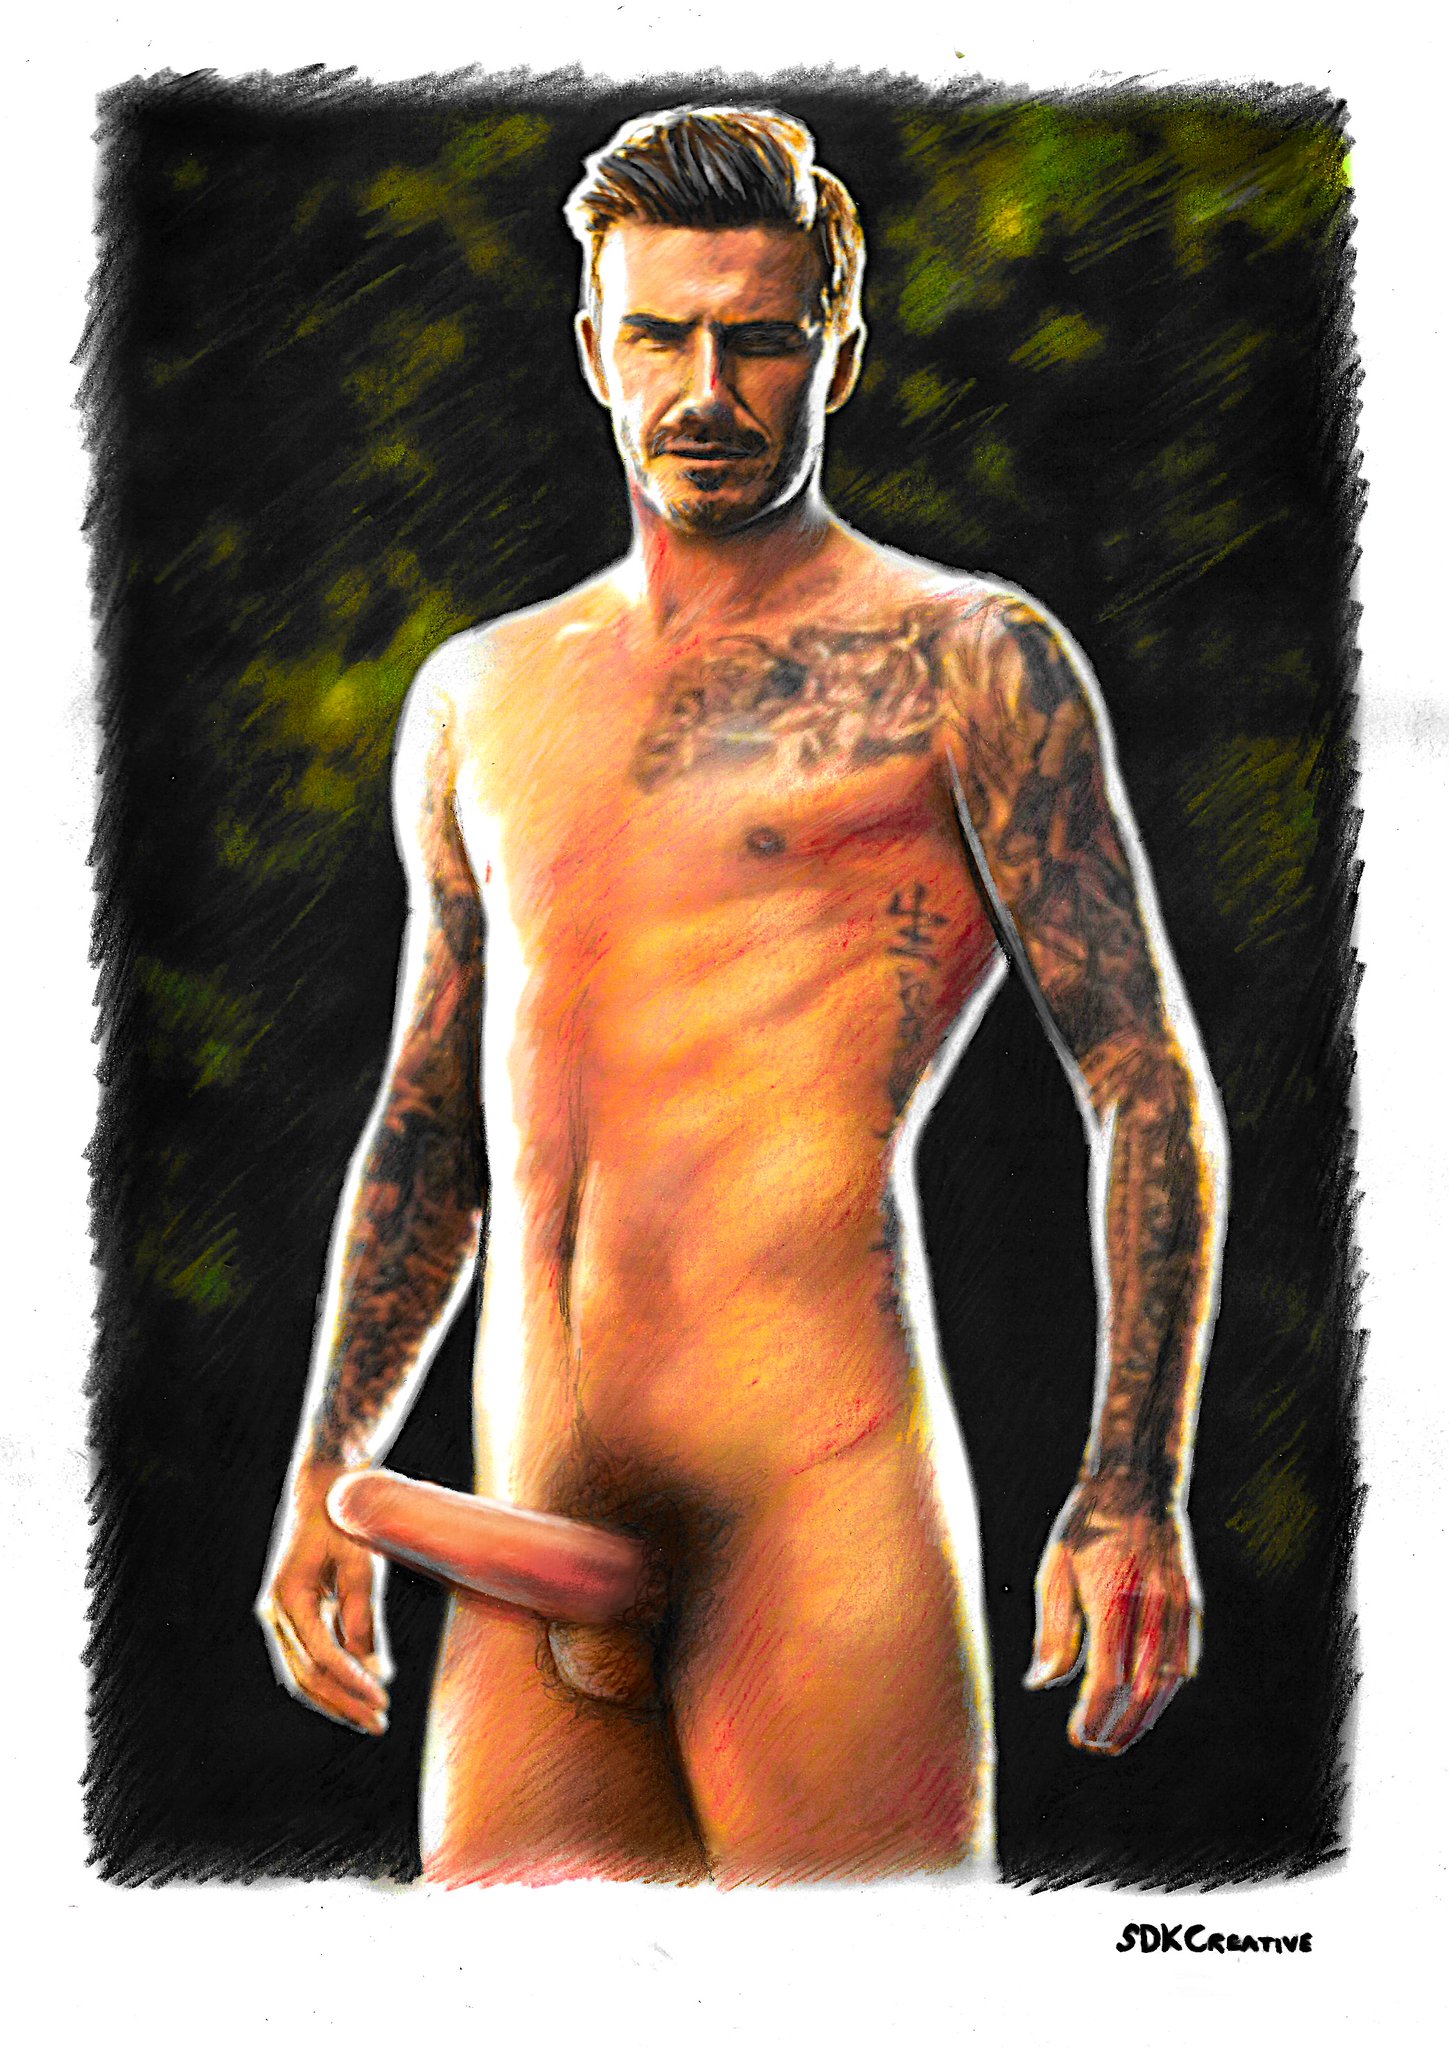 David Beckham Visible Penis & Balls Outline!